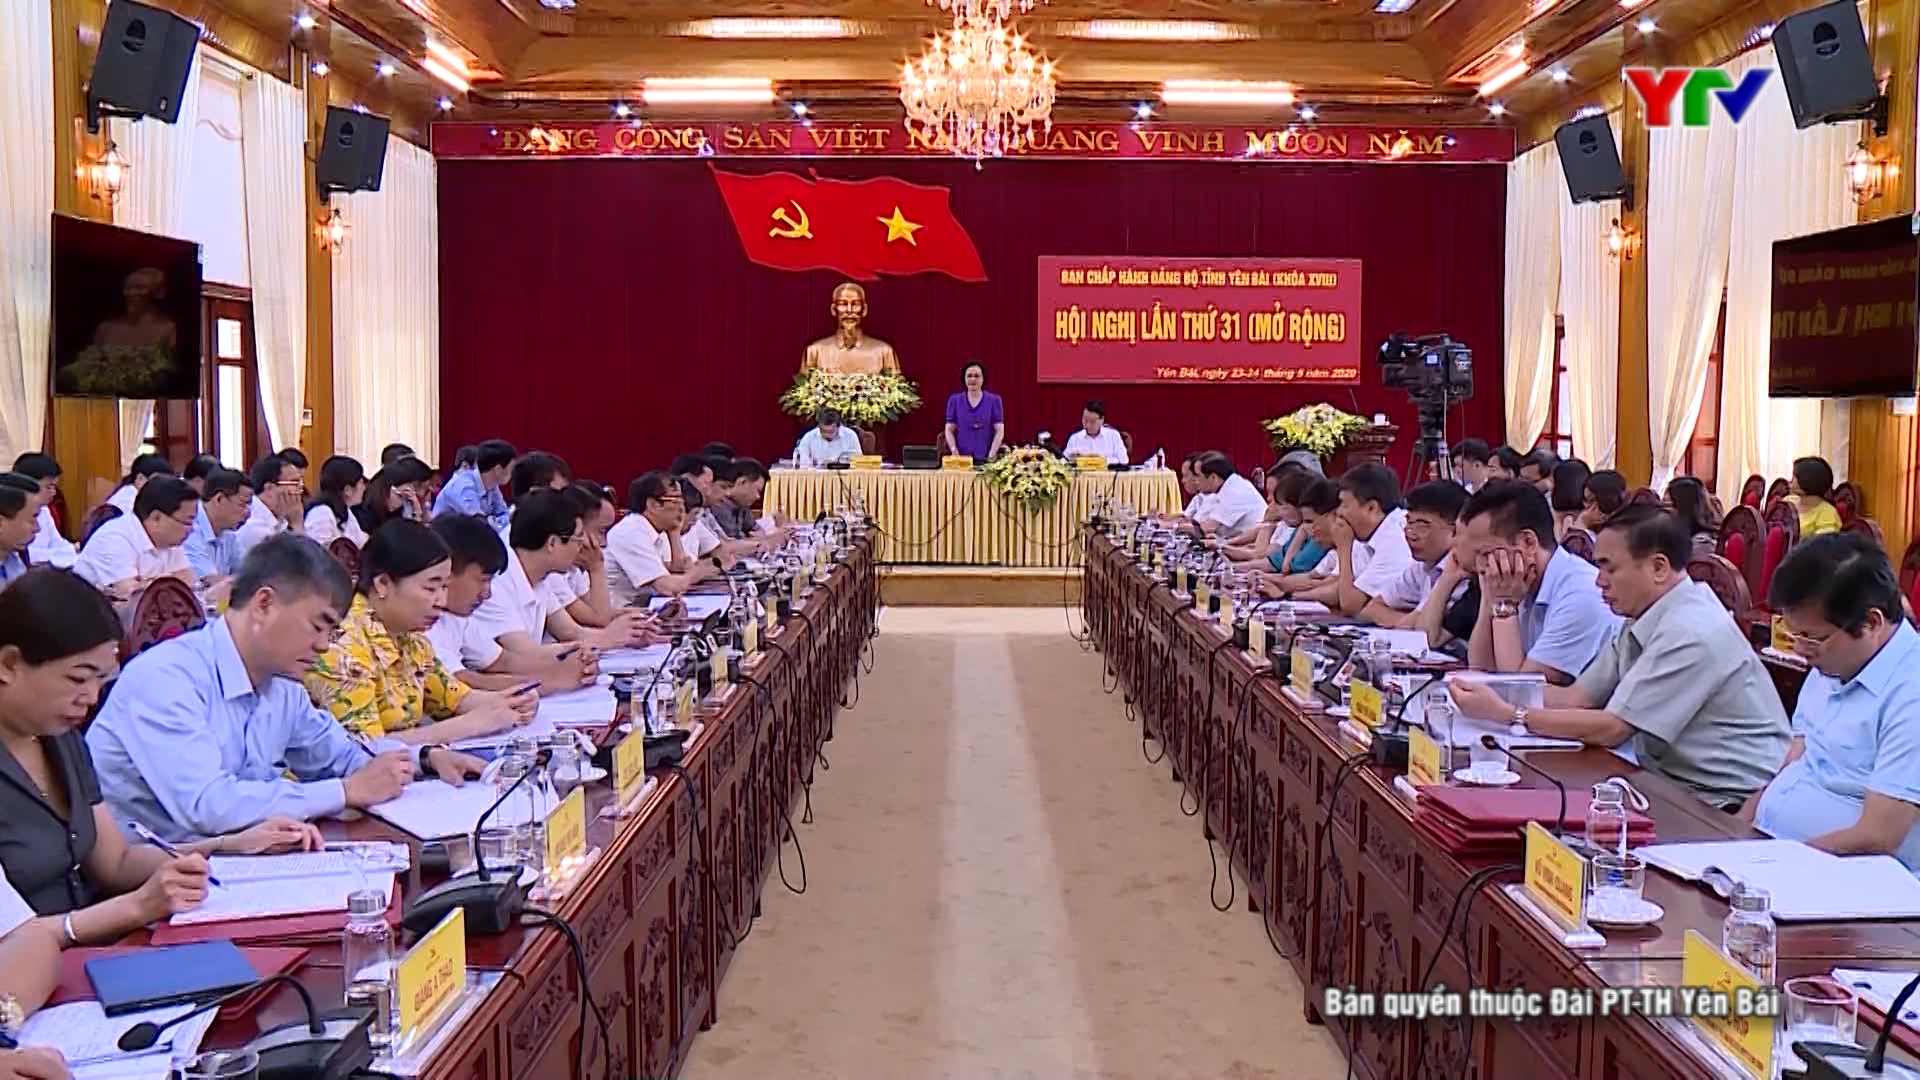 Hội nghị lần thứ 31- Ban Chấp hành Đảng bộ tỉnh Yên Bái khóa XVIII ( mở rộng)